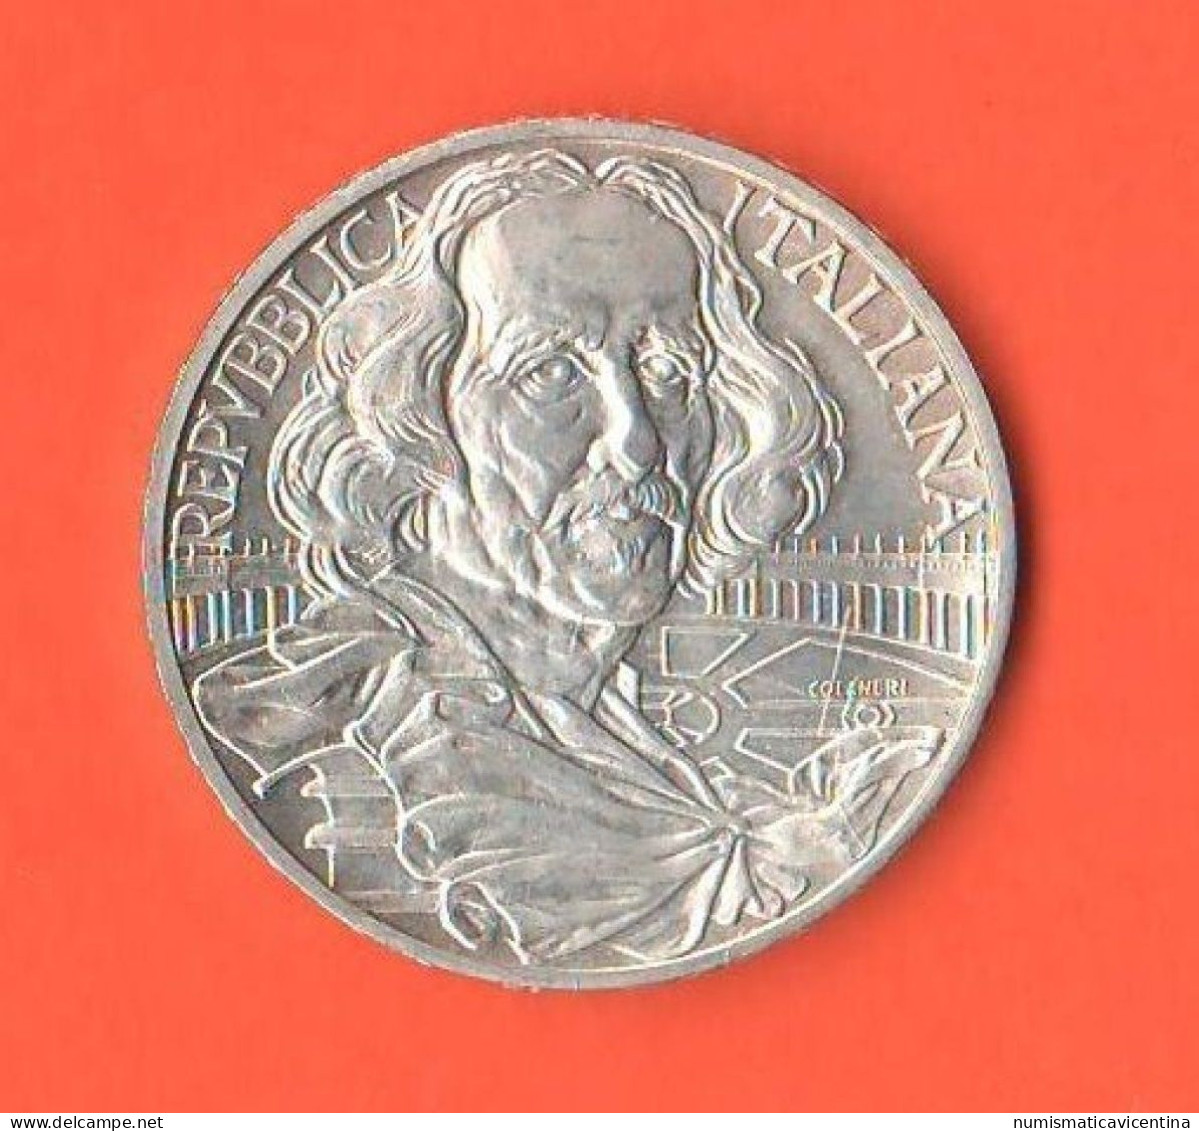 Italia 1000 Lire 1998 Bernini Italy Italie Silver Commemorative Coin - Commémoratives